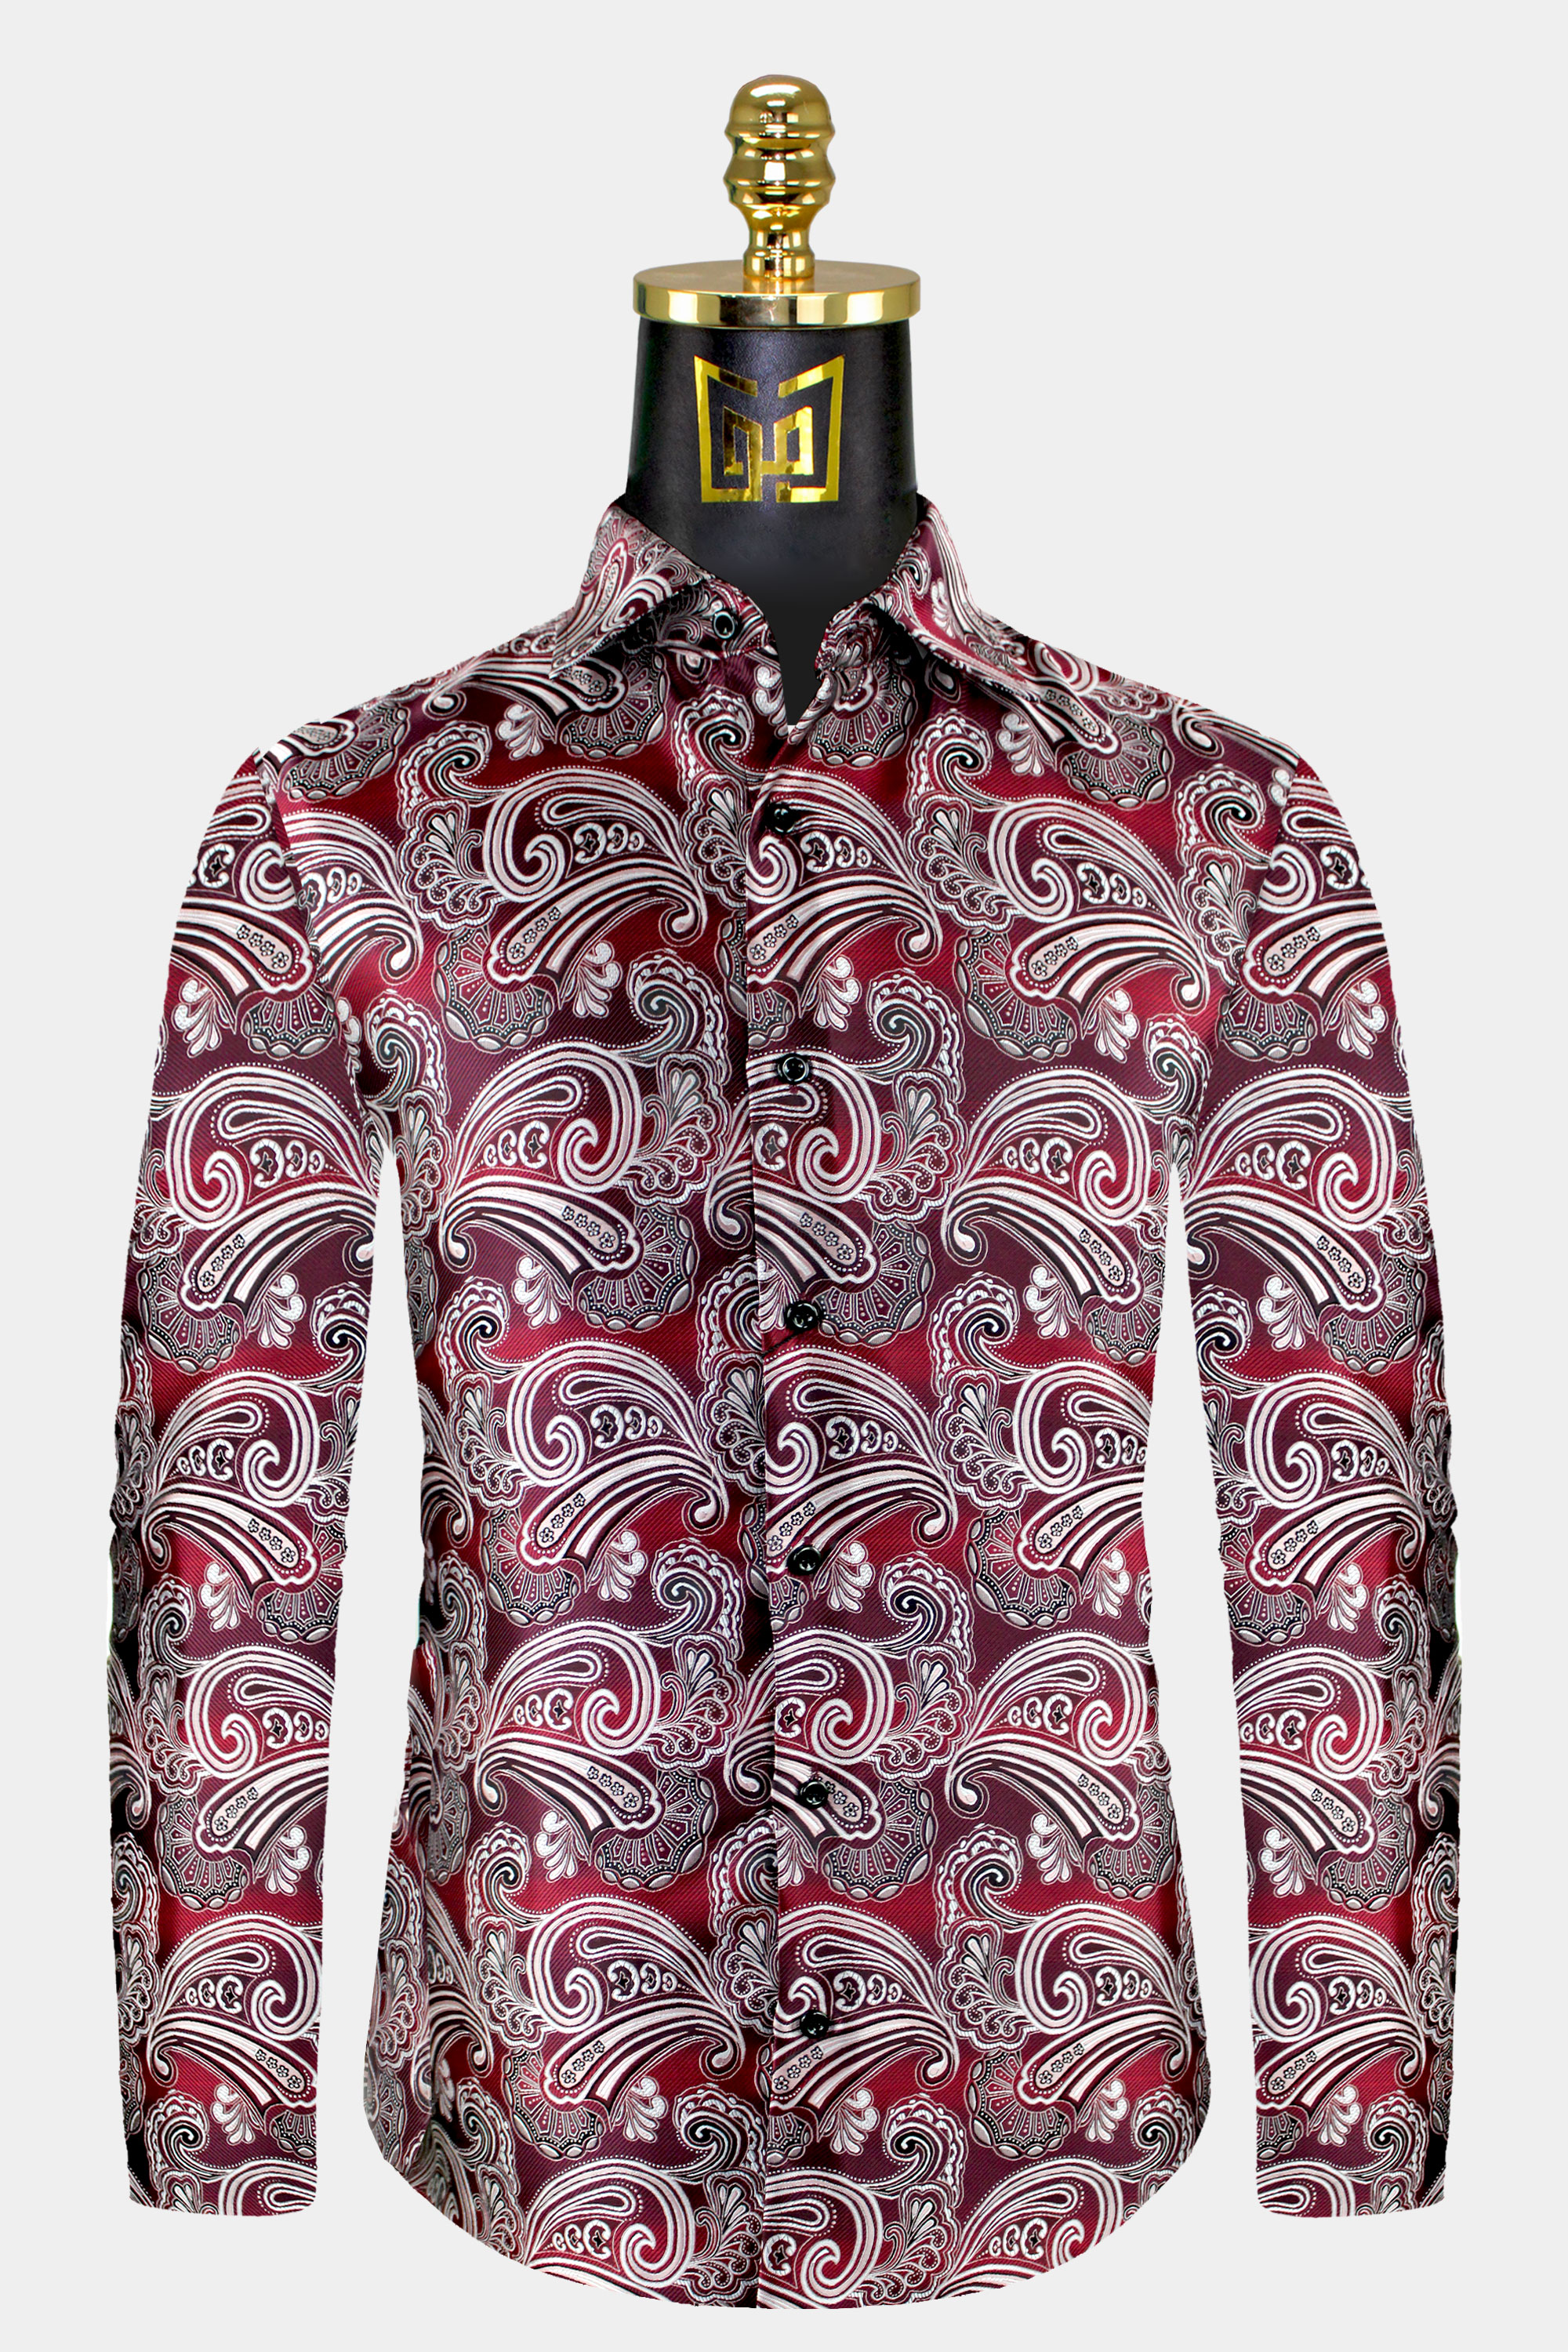 Mens-Burgundy-Paisley-Shirt-Floral-Dress-Shirt-For-Men-from-Gentlemansguru.com